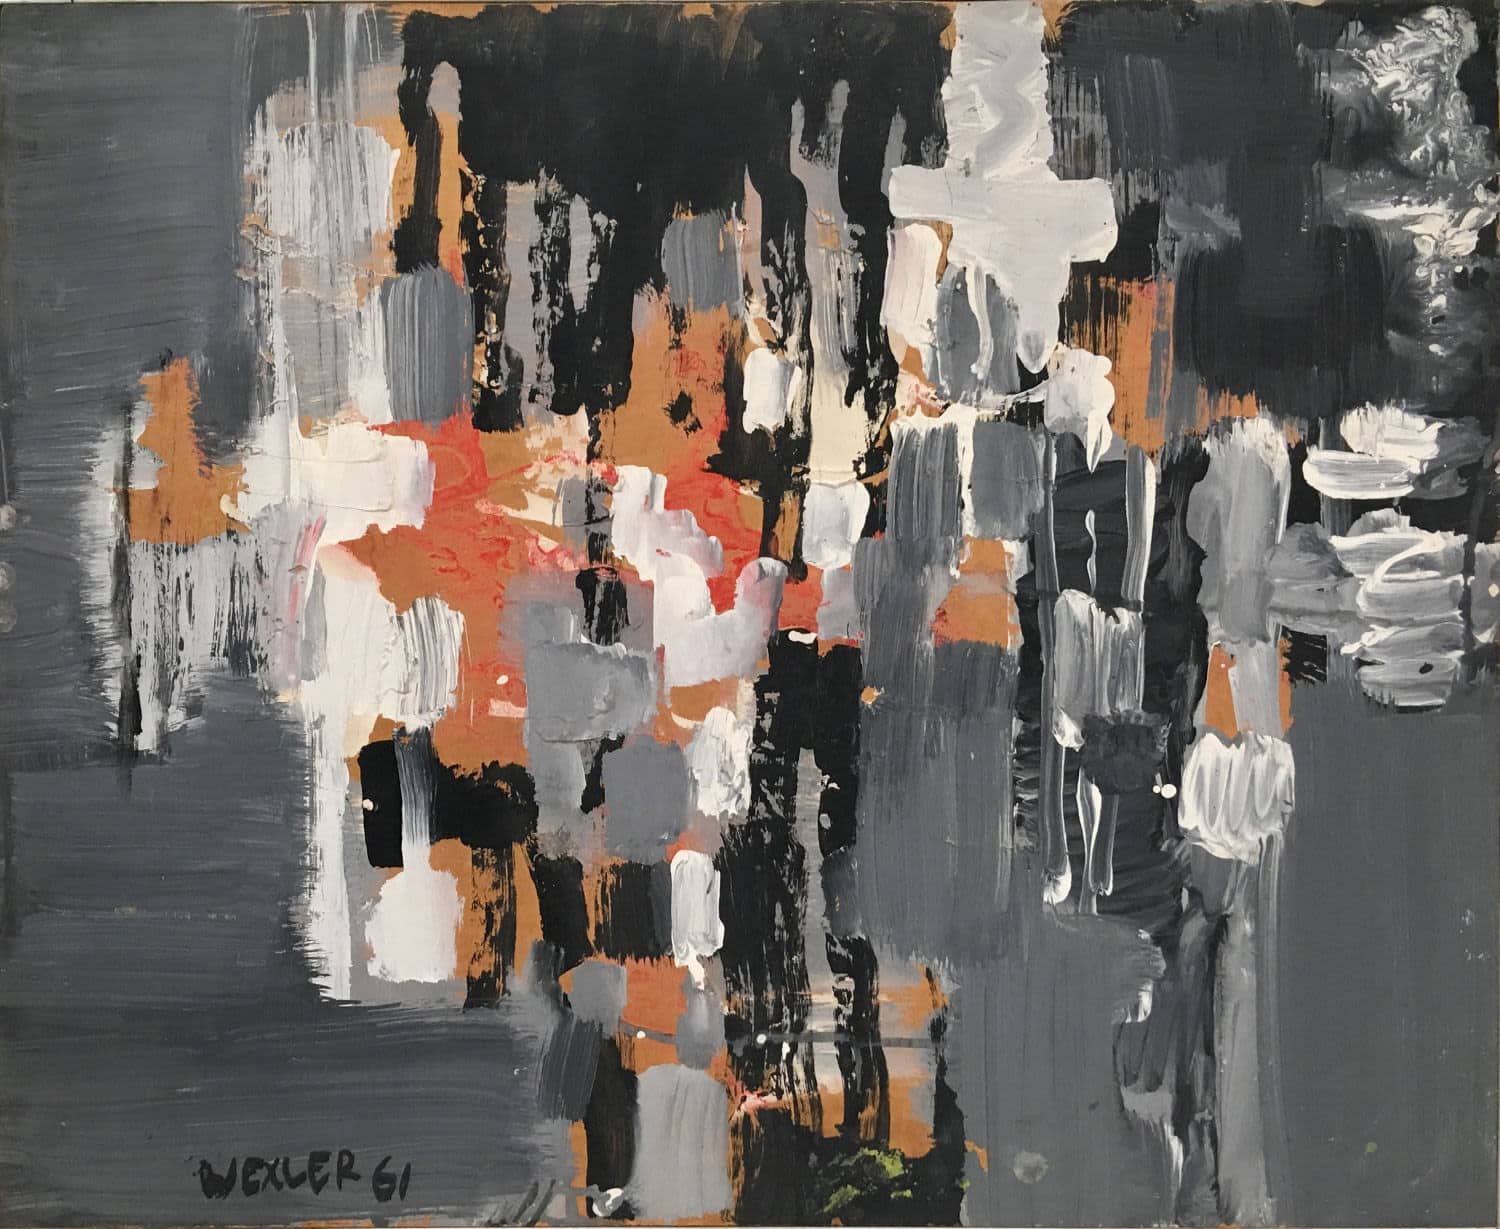 יעקב וכסלר, "ללא כותרת", 1961, שמן על לוח עץ, 52x63 ס"מ